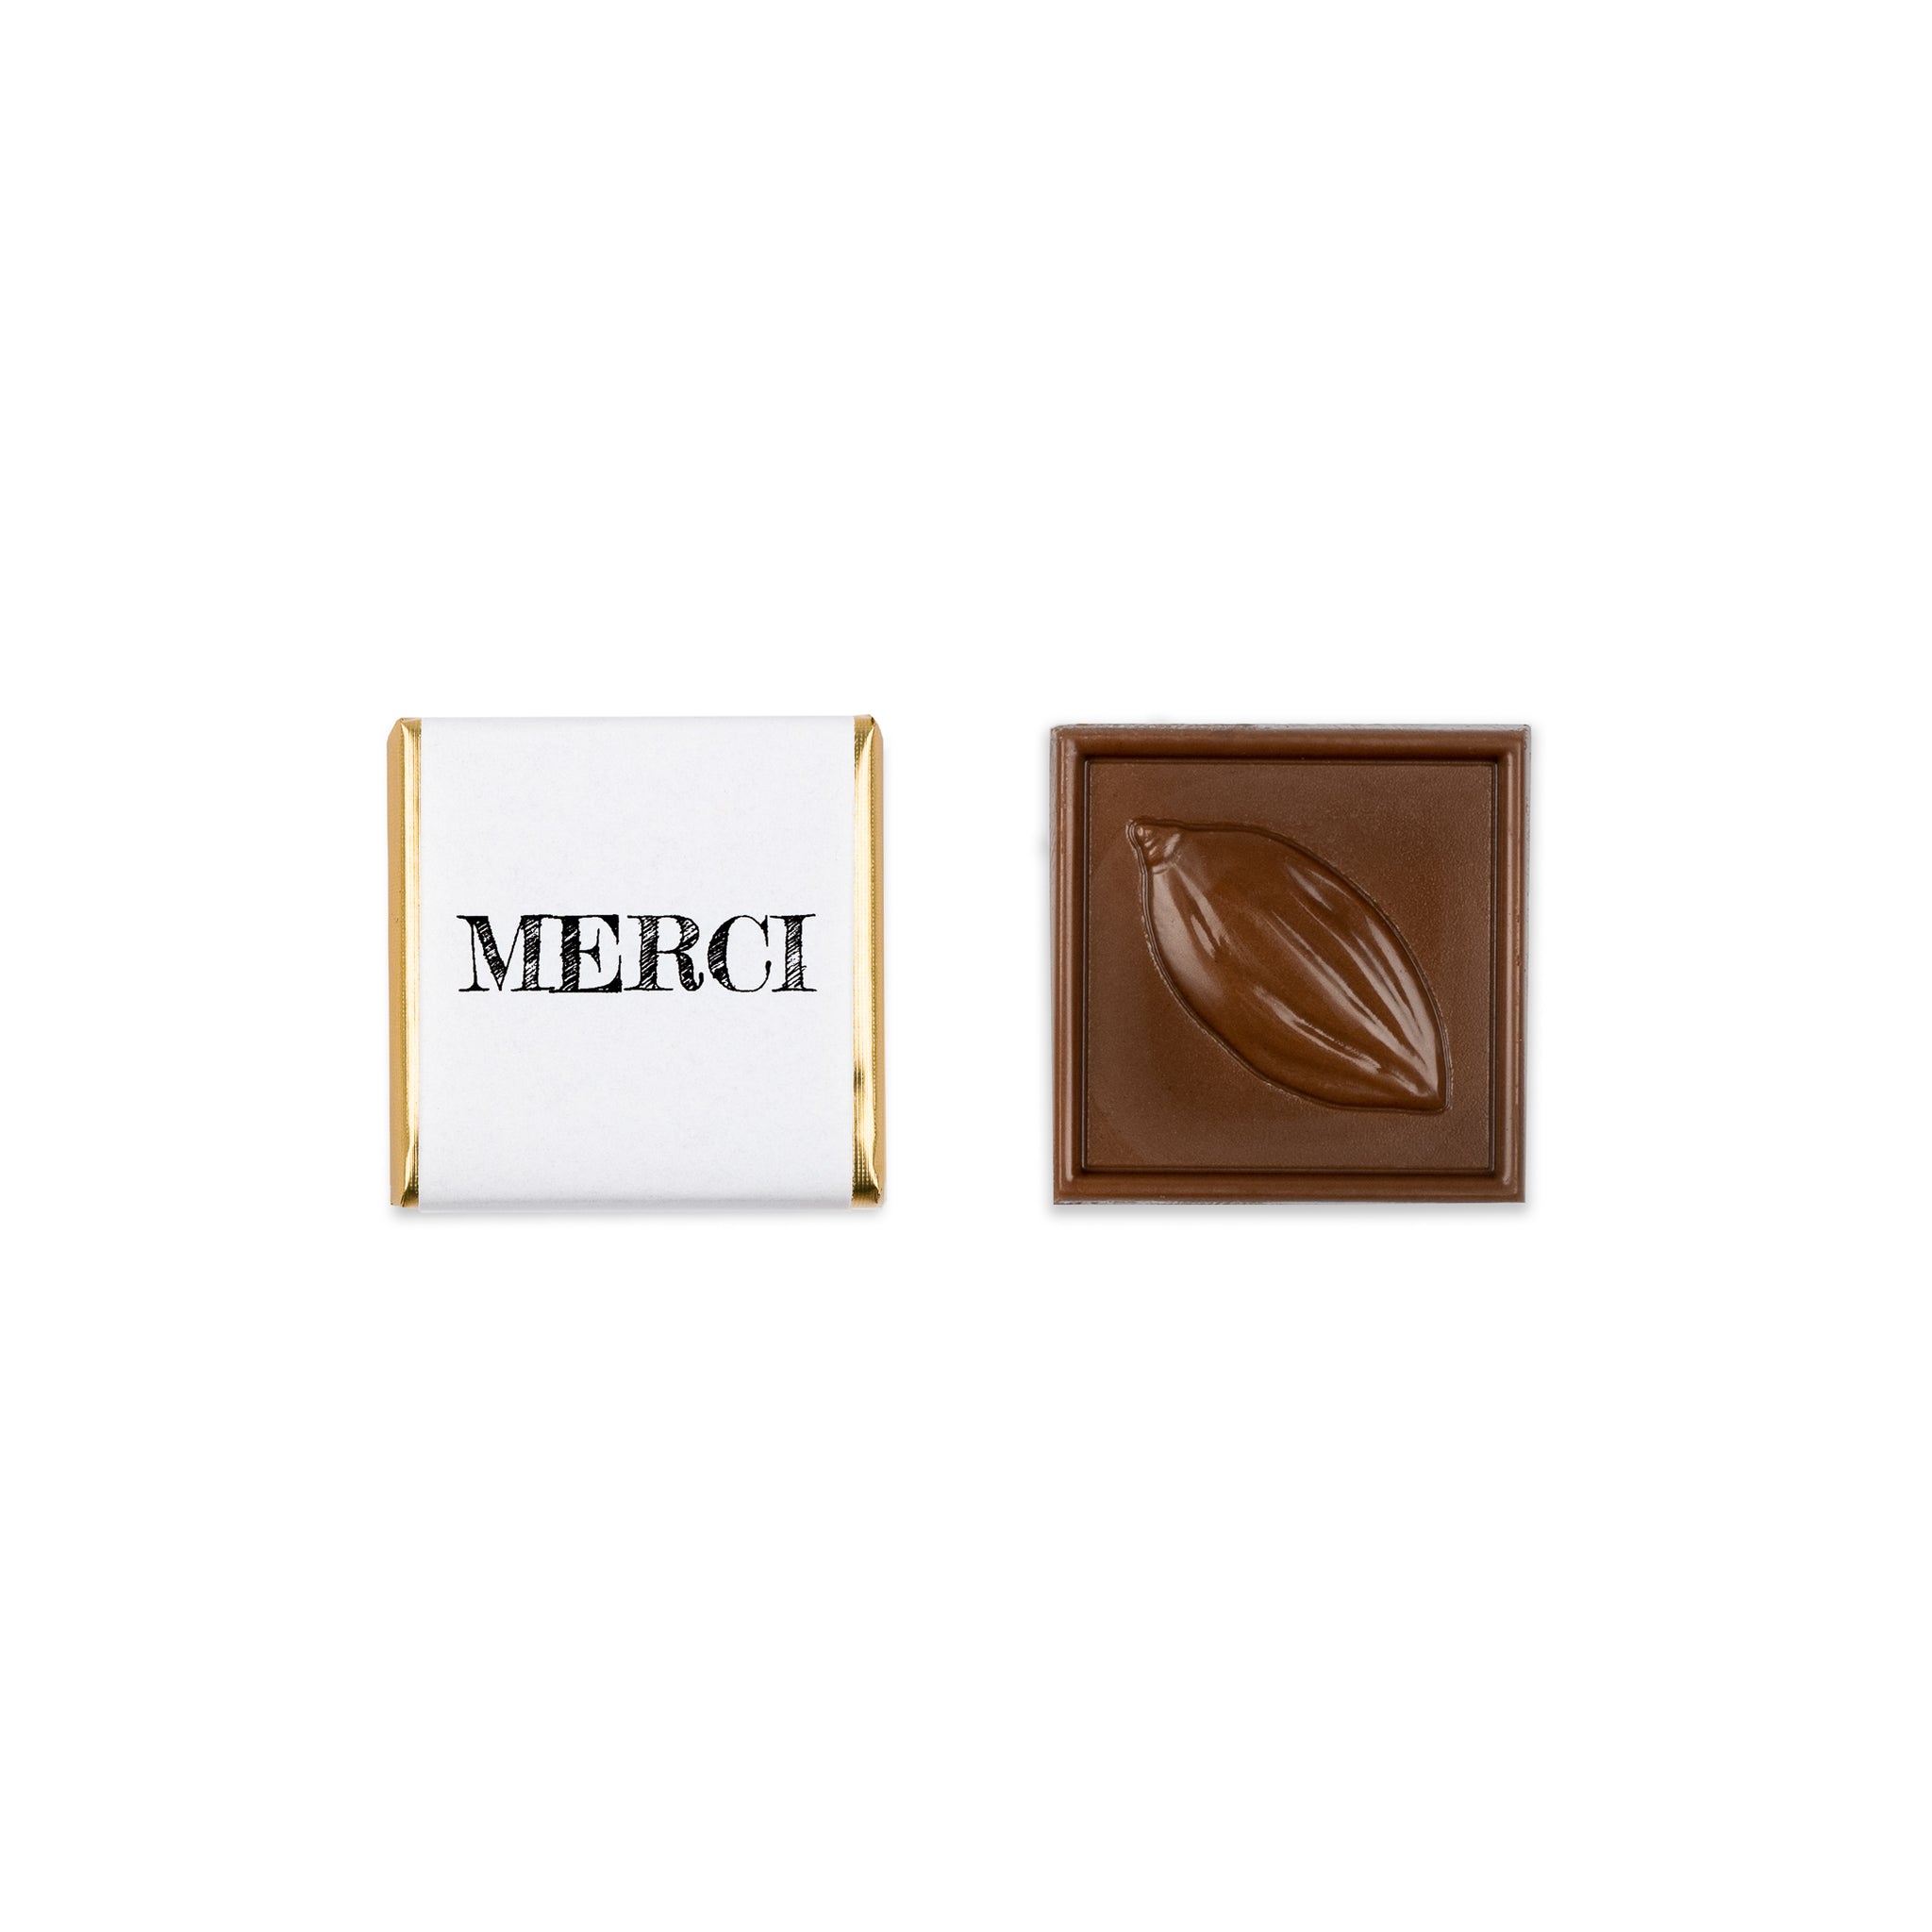 100 carrés de chocolat Merci - 0.50$ chacun - Chocolat Boréal